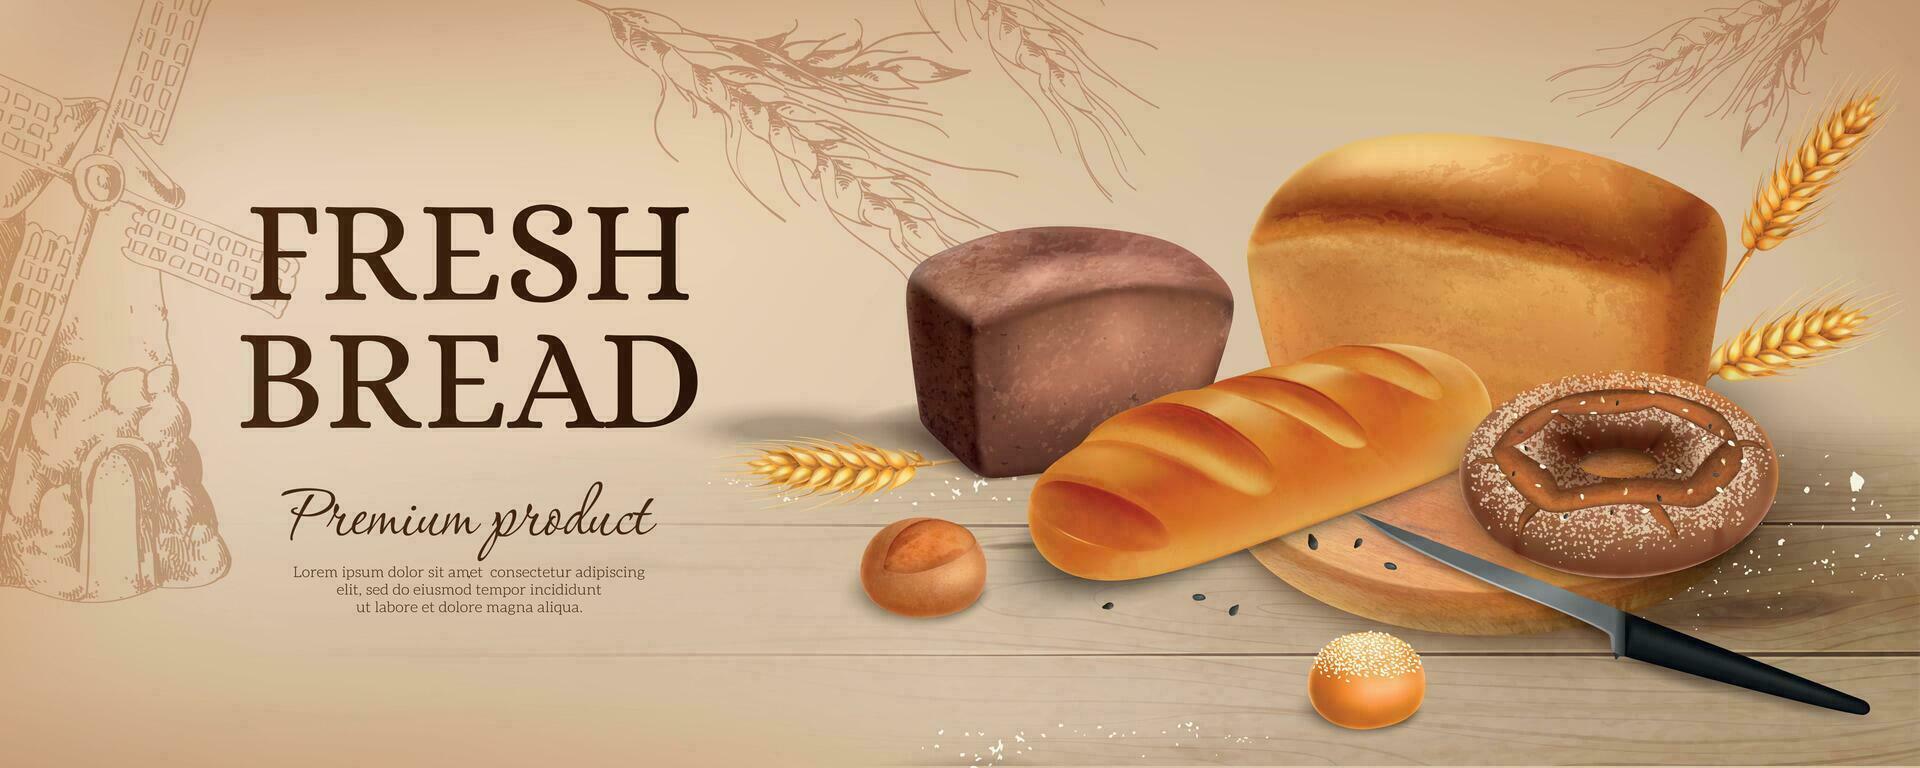 realista un pan anuncios horizontal póster vector